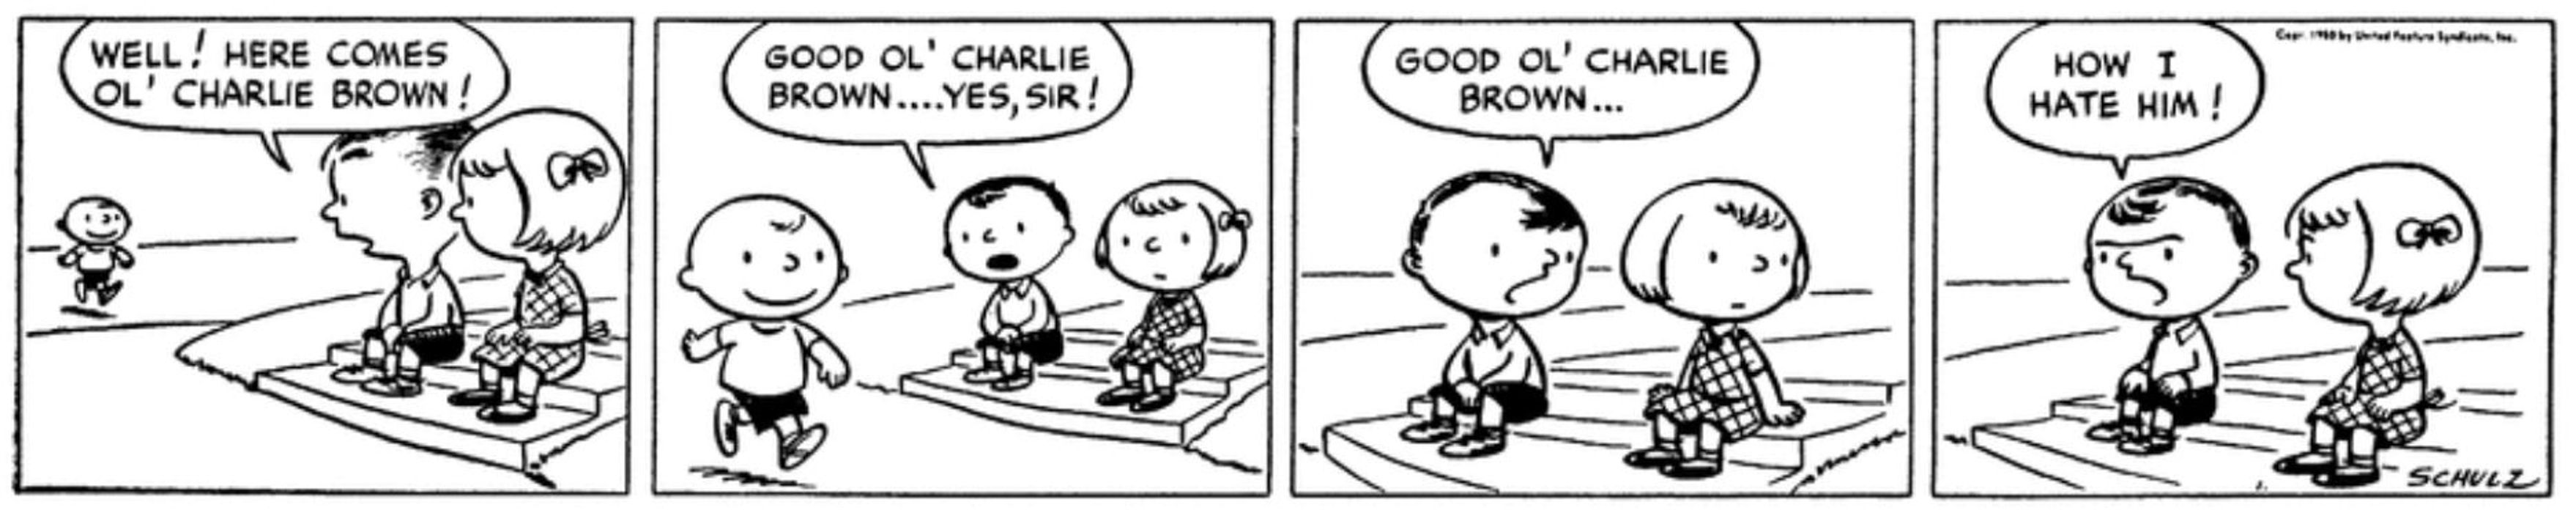 Good Ol Charlie Brown Peanuts